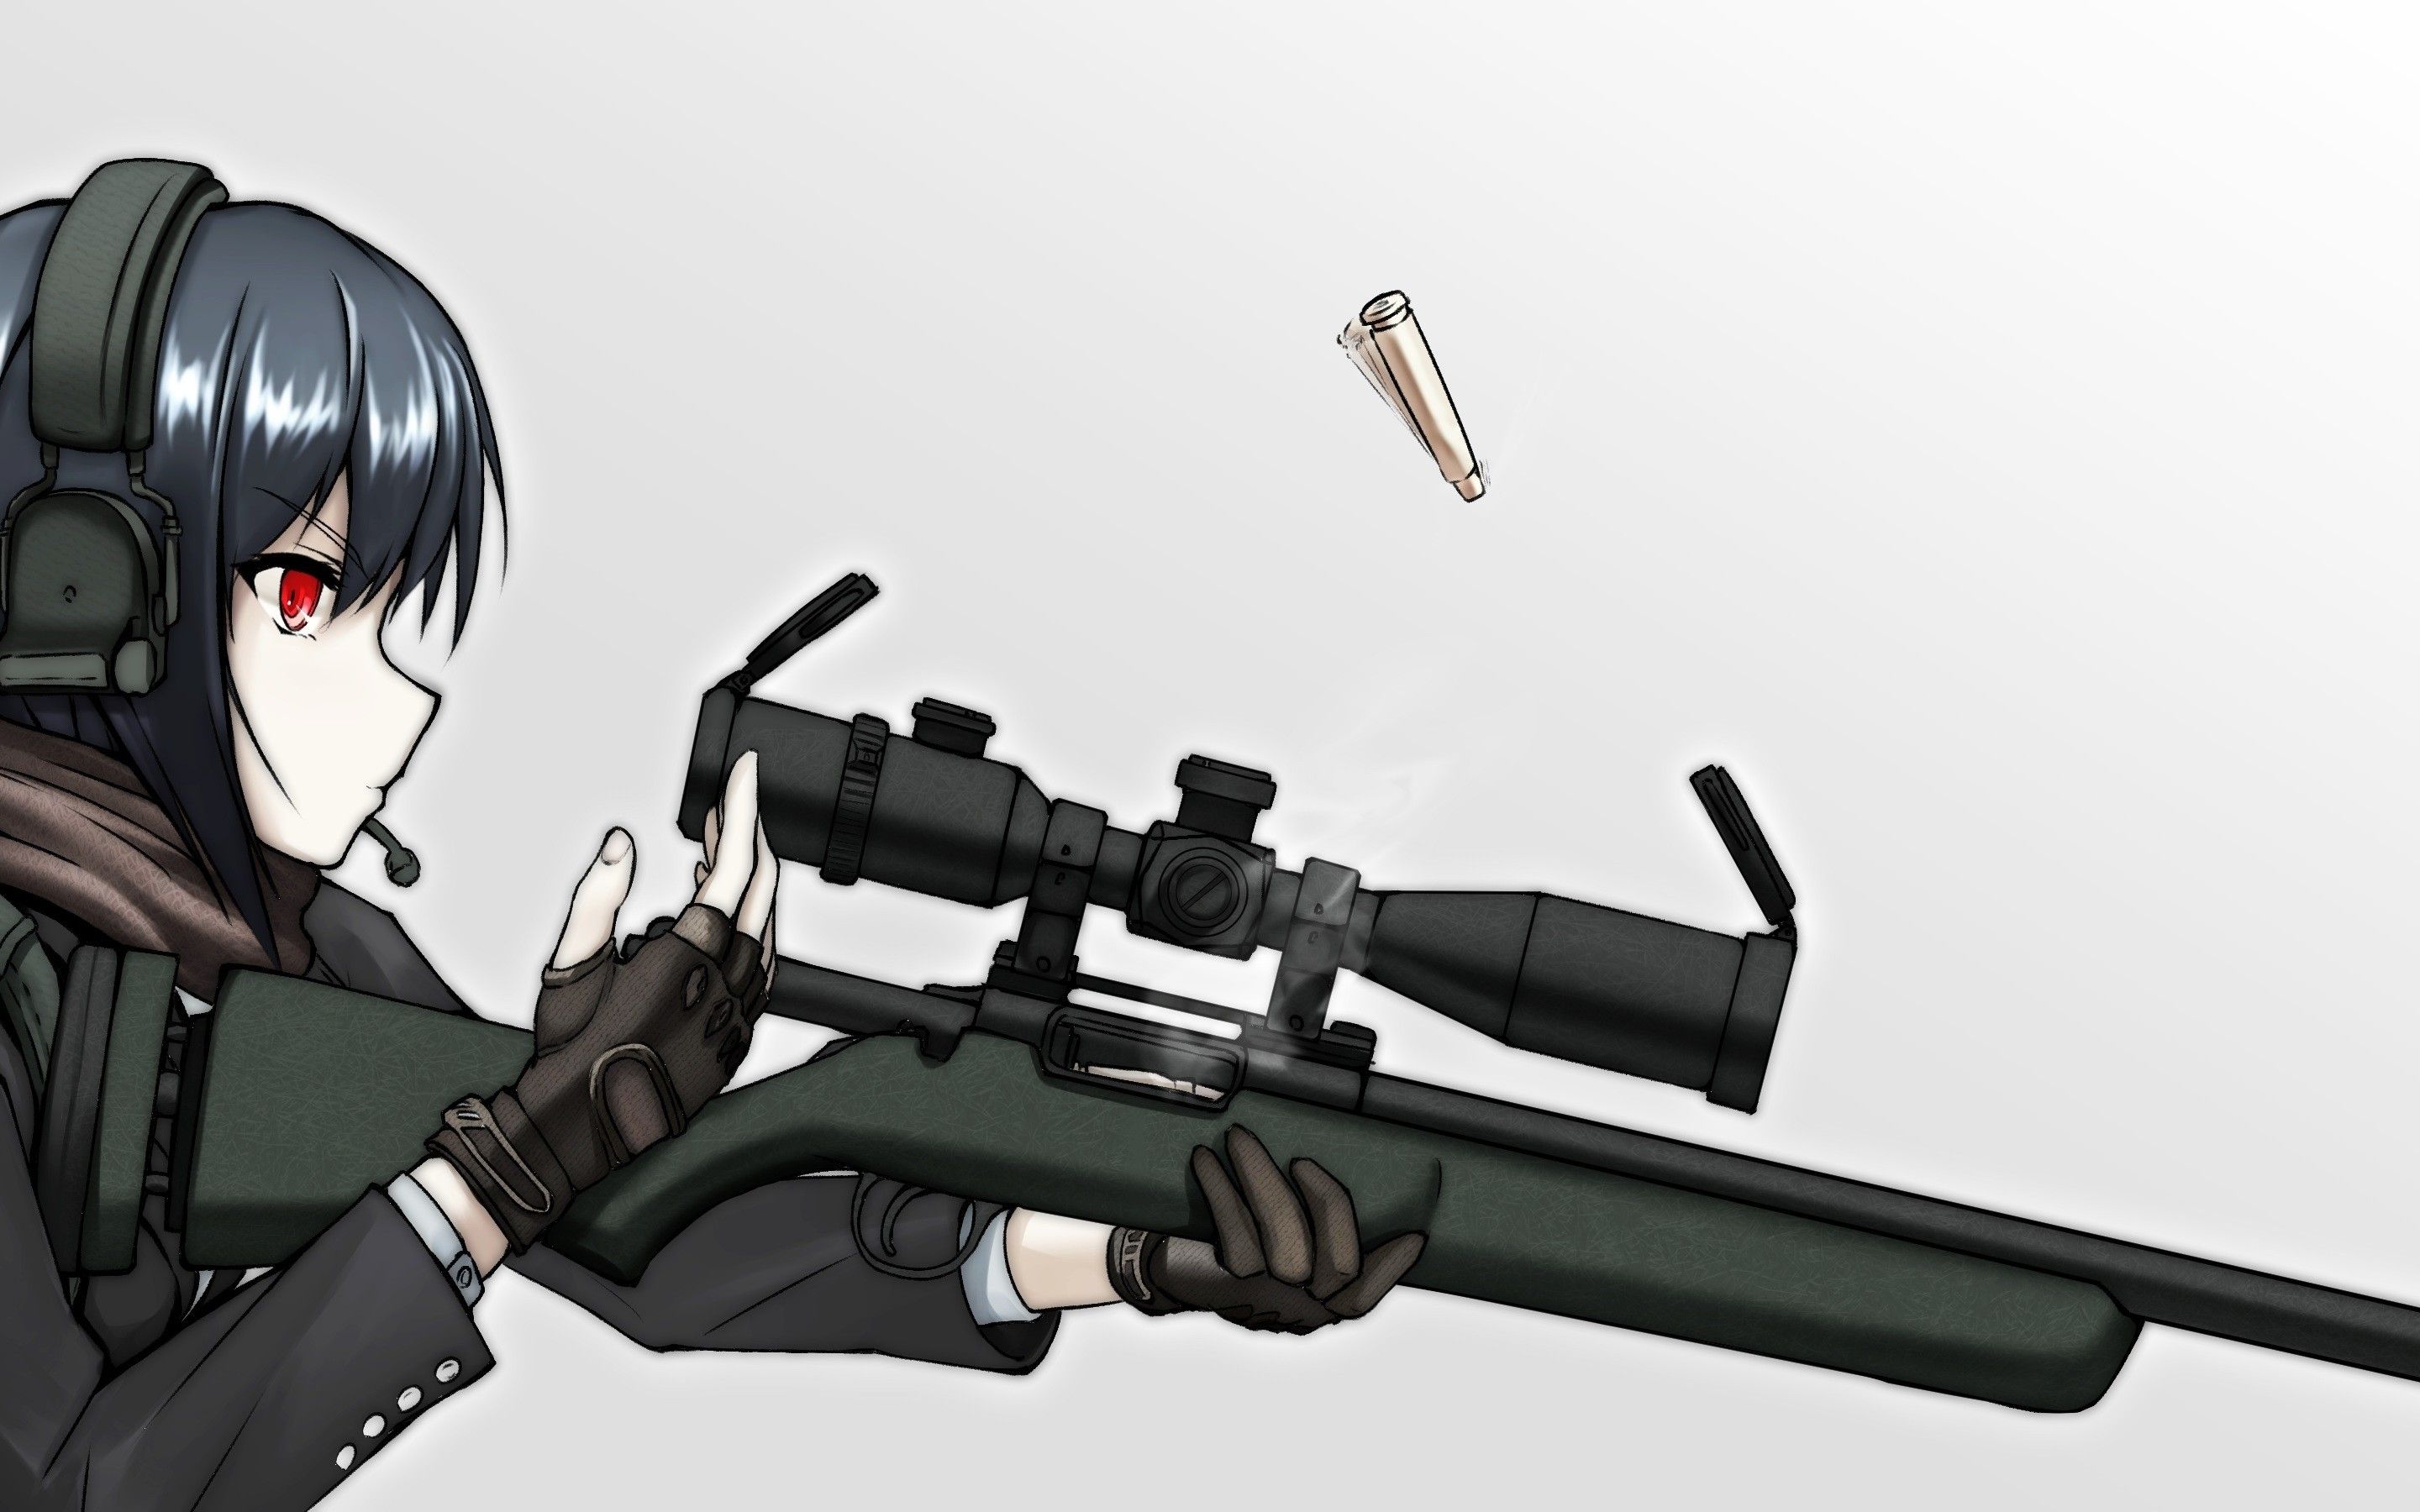 Wallpaper  gun anime girls blue eyes school sniper rifle uniform  snipers assassins Barrett M82 AutoMan screenshot 5846x4133  UAman   57863  HD Wallpapers  WallHere